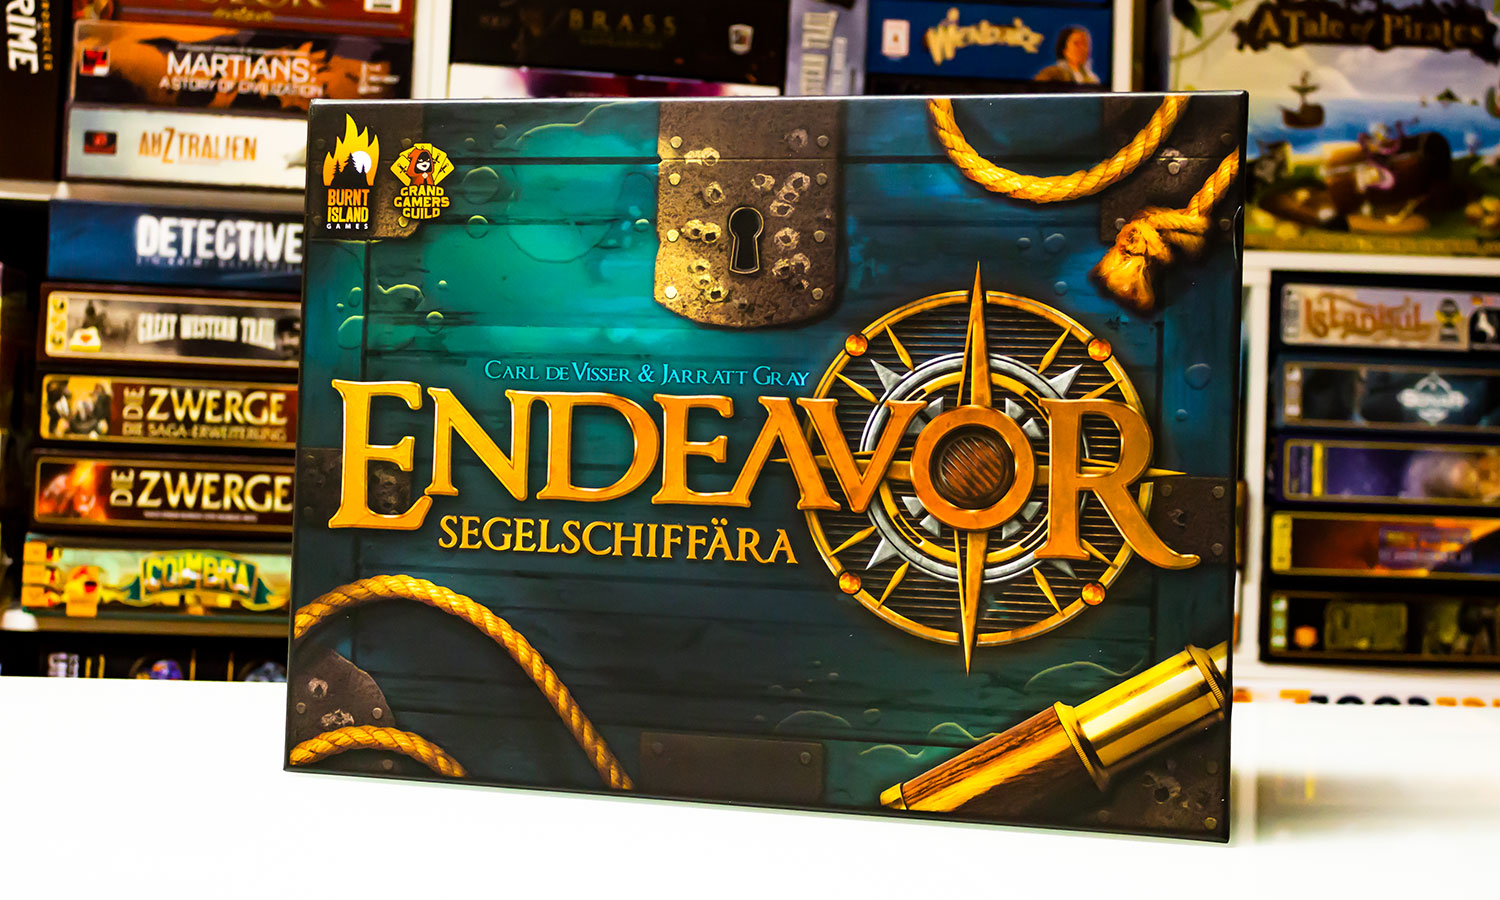 Endeavor: Segelschiffära ist jetzt online verfügbar – erste Bilder